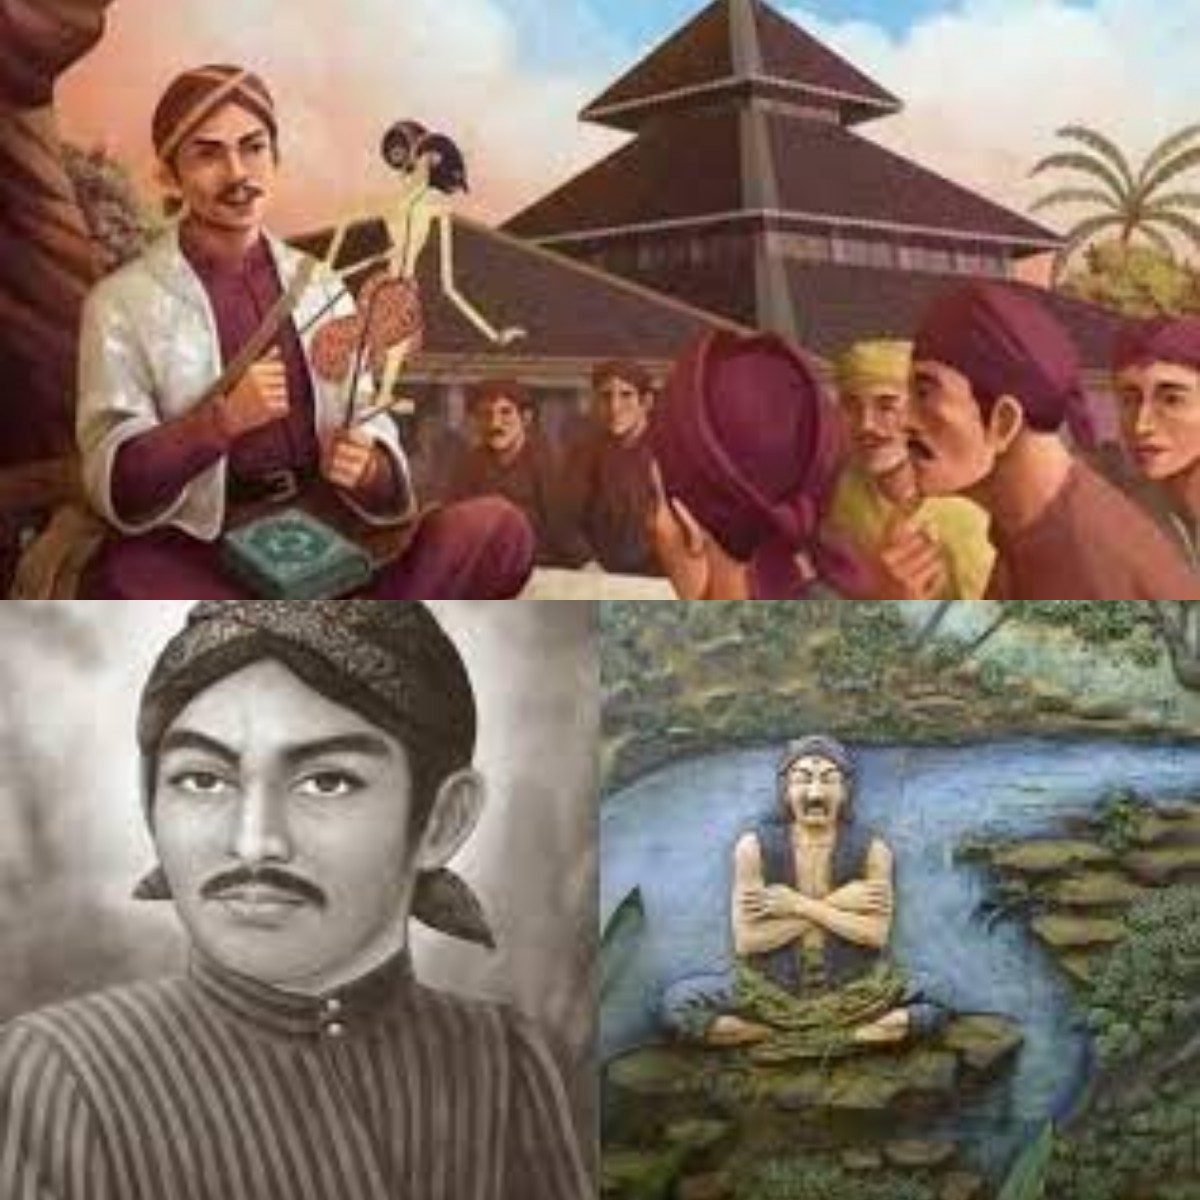 Mengulik Sejarah Kesultanan Agung Mataram yang Berhasil Berdiri Berkat Sunan Kalijaga 